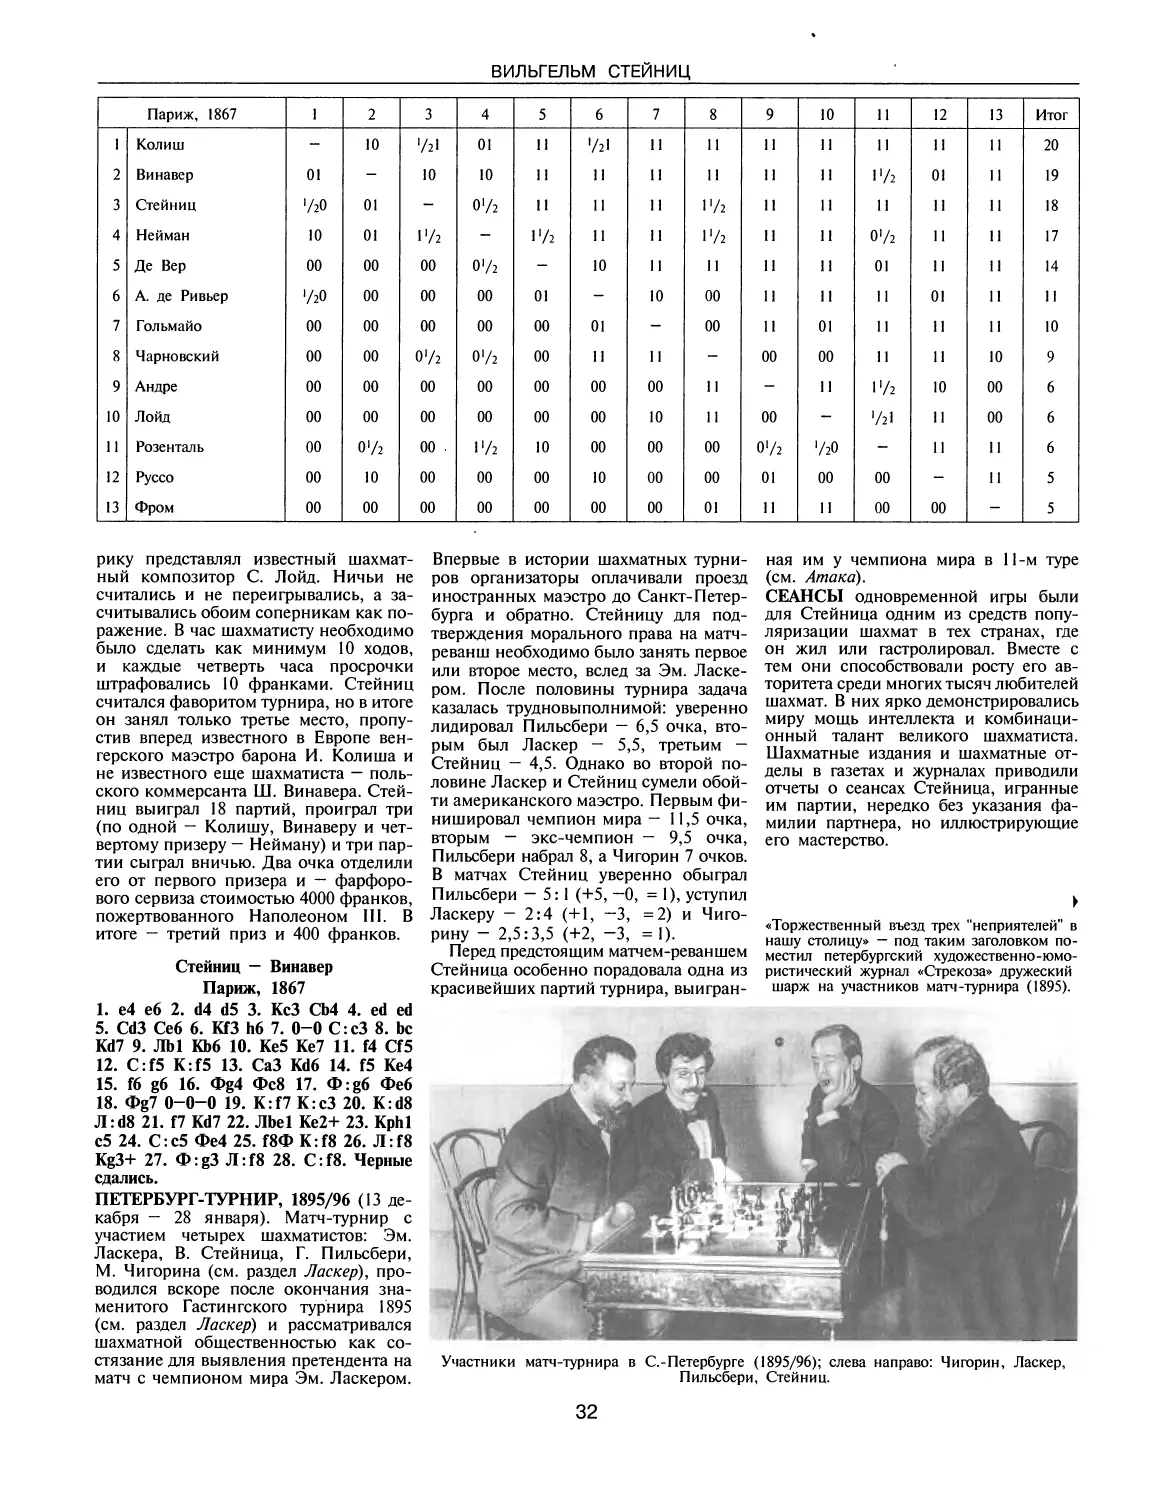 Петербург-турнир, 1895/96
Сеансы